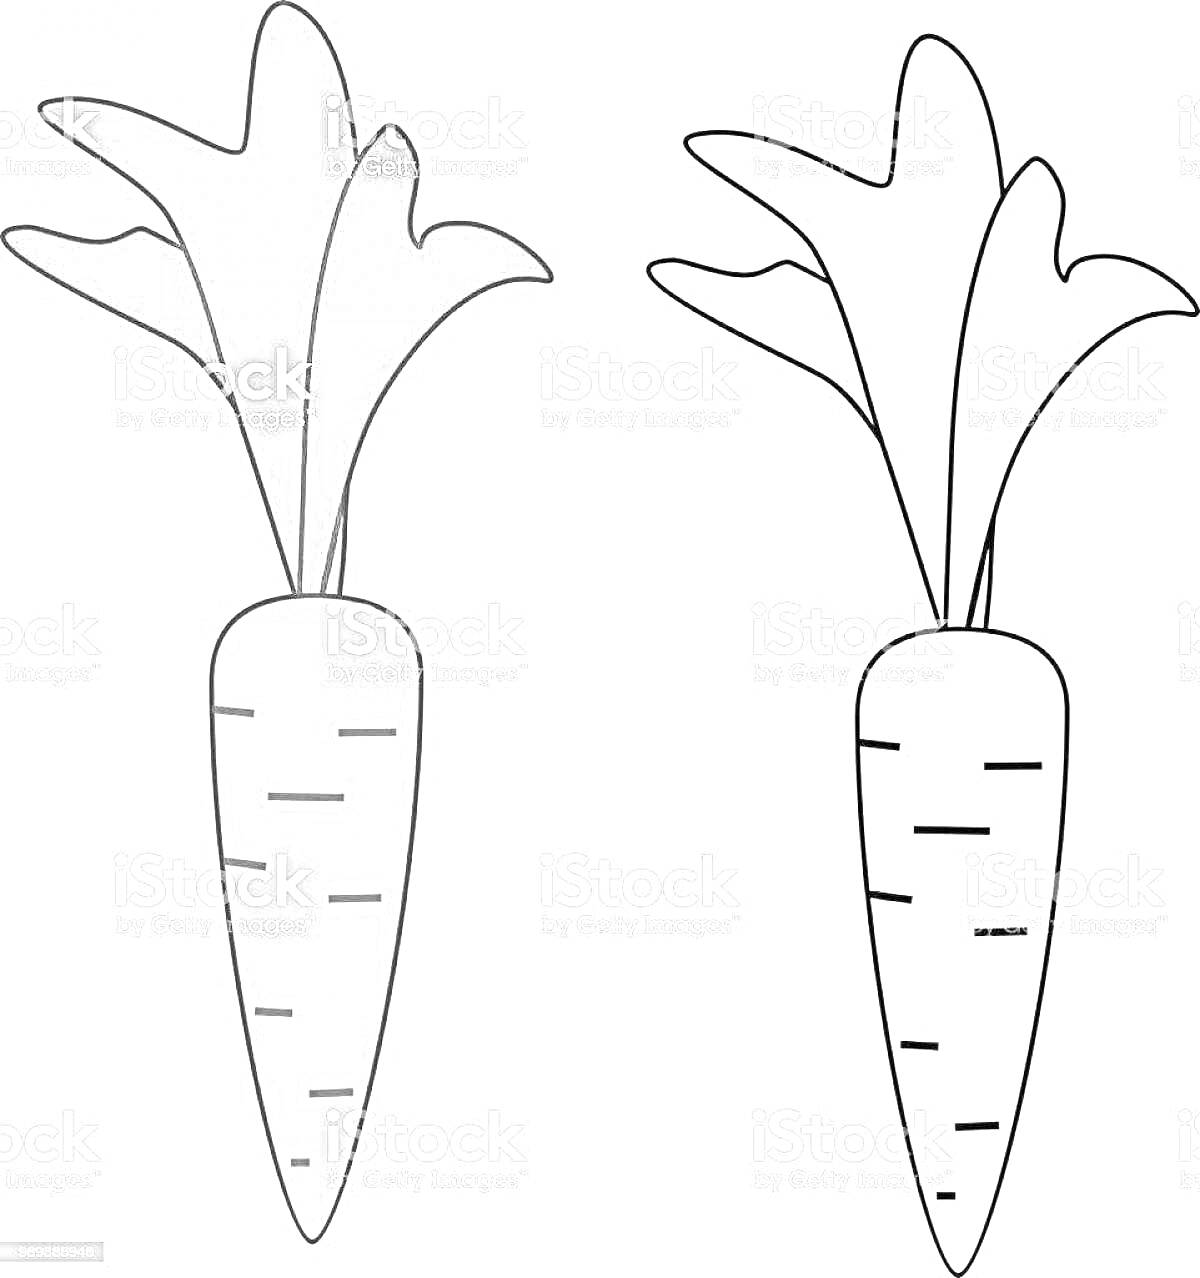 Раскраска двух морковок, одна раскрашенная, другая нет.